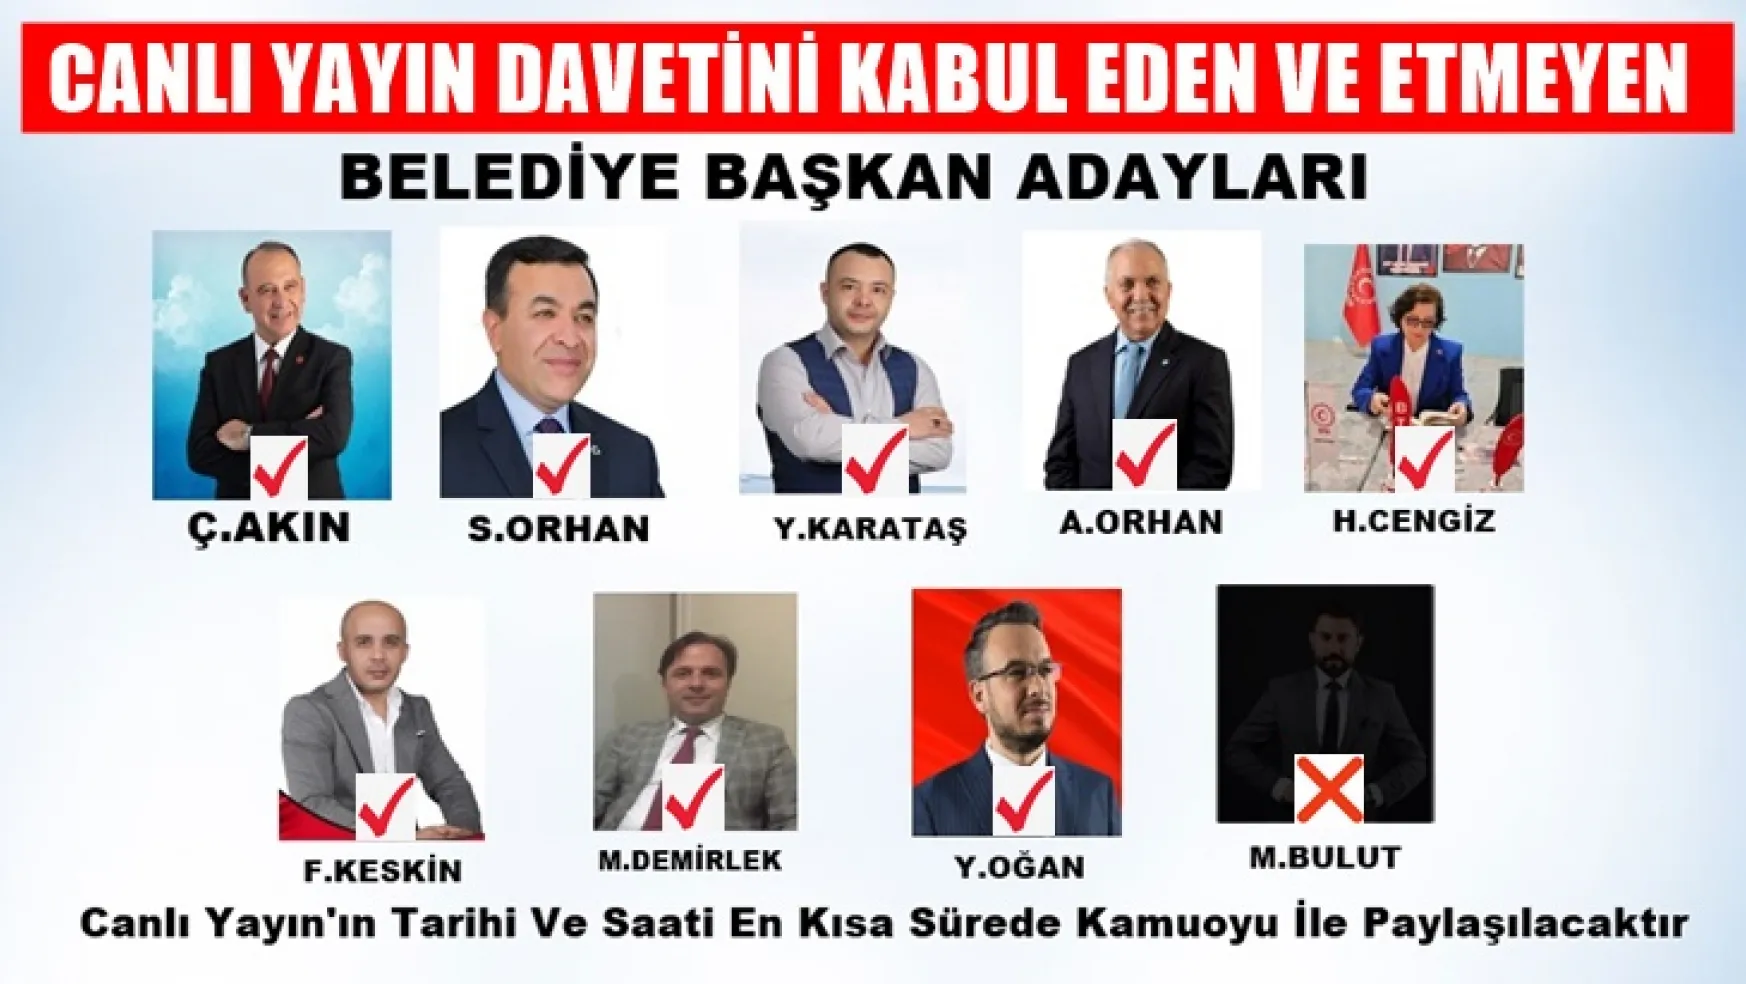 Turgutlu'da Canlı Yayın teklifini kabul eden ve etmeyen adaylar!..